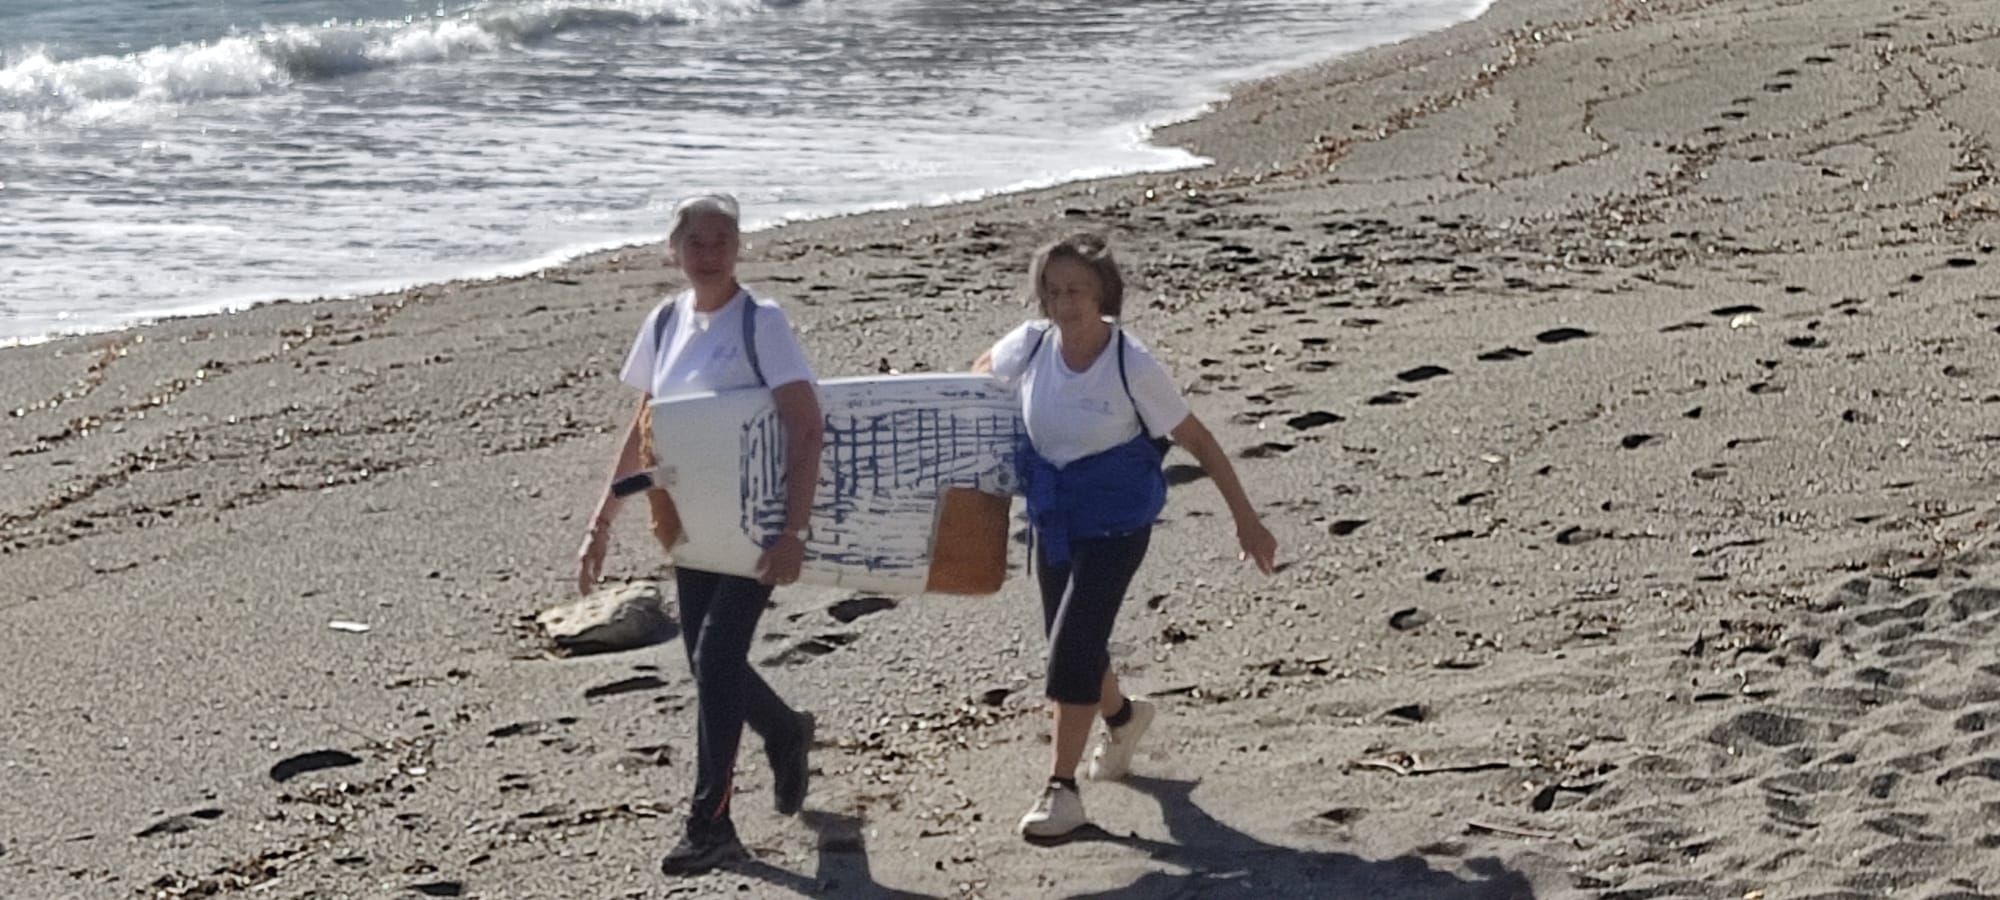 Platges Netes recull quaranta quilos de brossa al Cau del Llop de Llançà